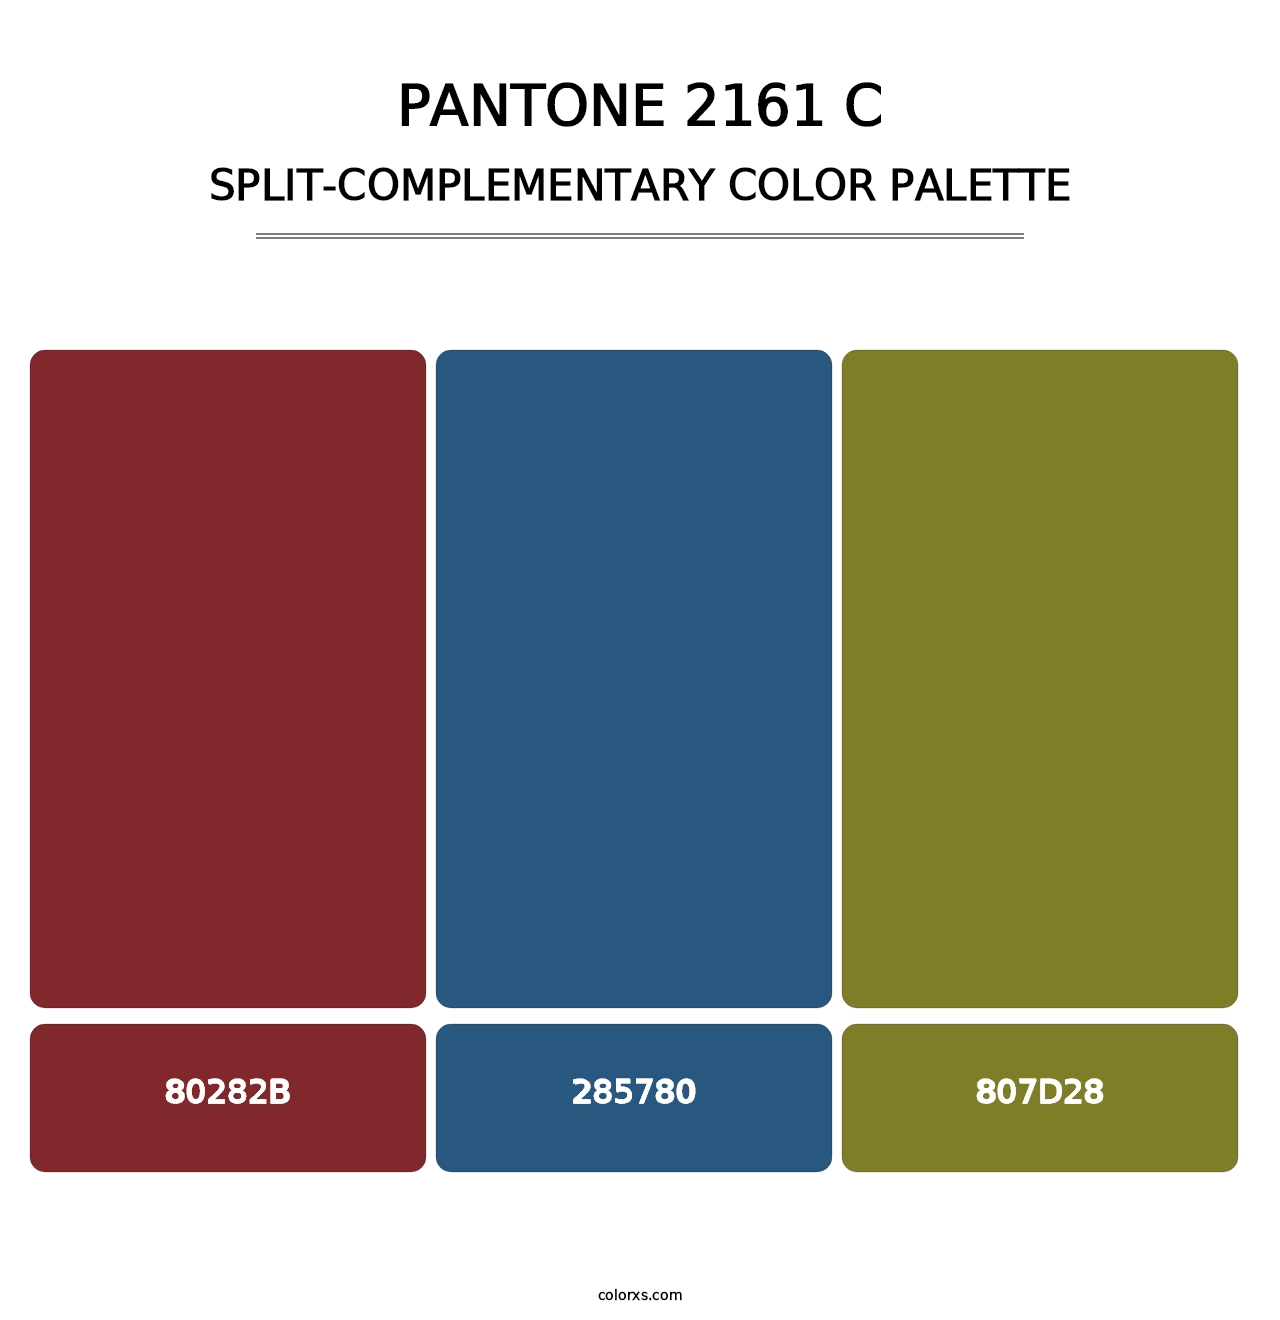 PANTONE 2161 C - Split-Complementary Color Palette